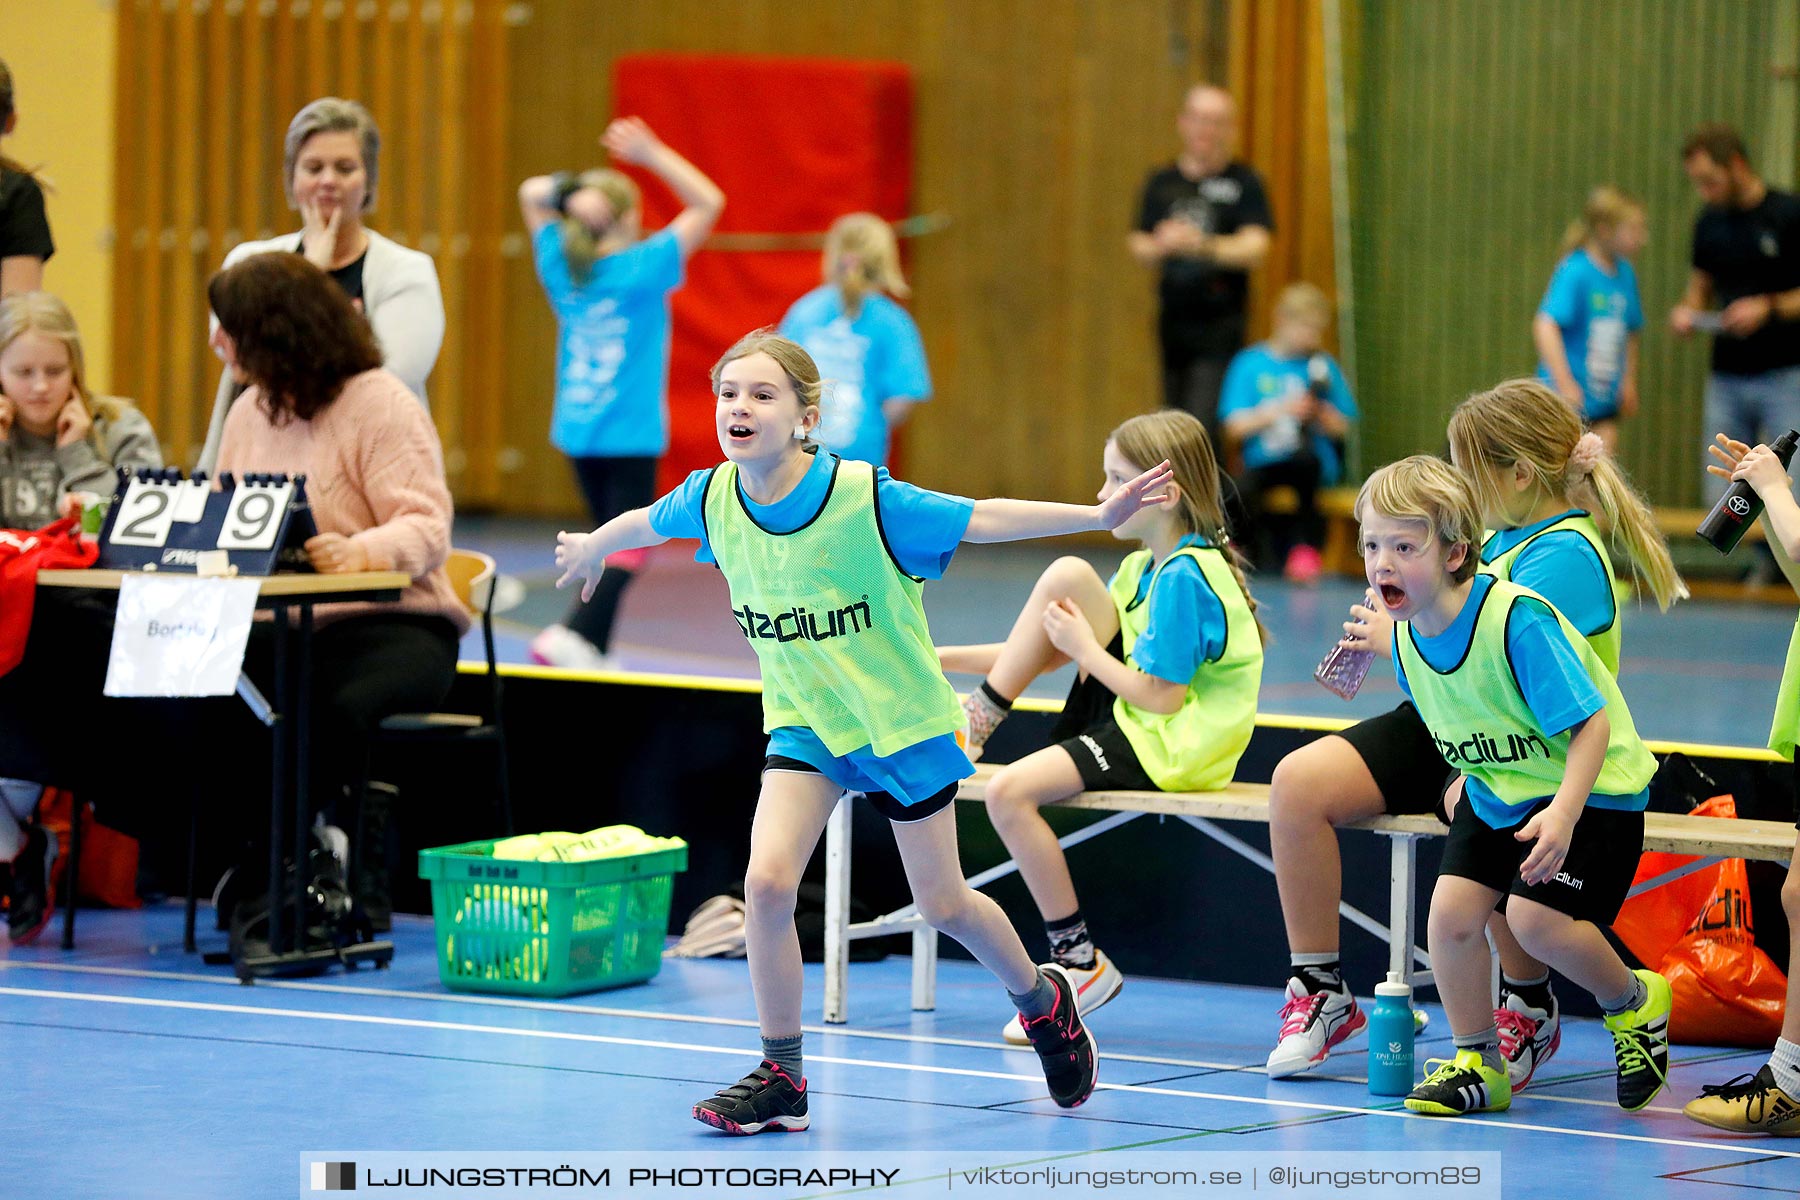 Klasshandboll Skövde 2019 Åldersklass 2010,mix,Arena Skövde,Skövde,Sverige,Handboll,,2019,212102